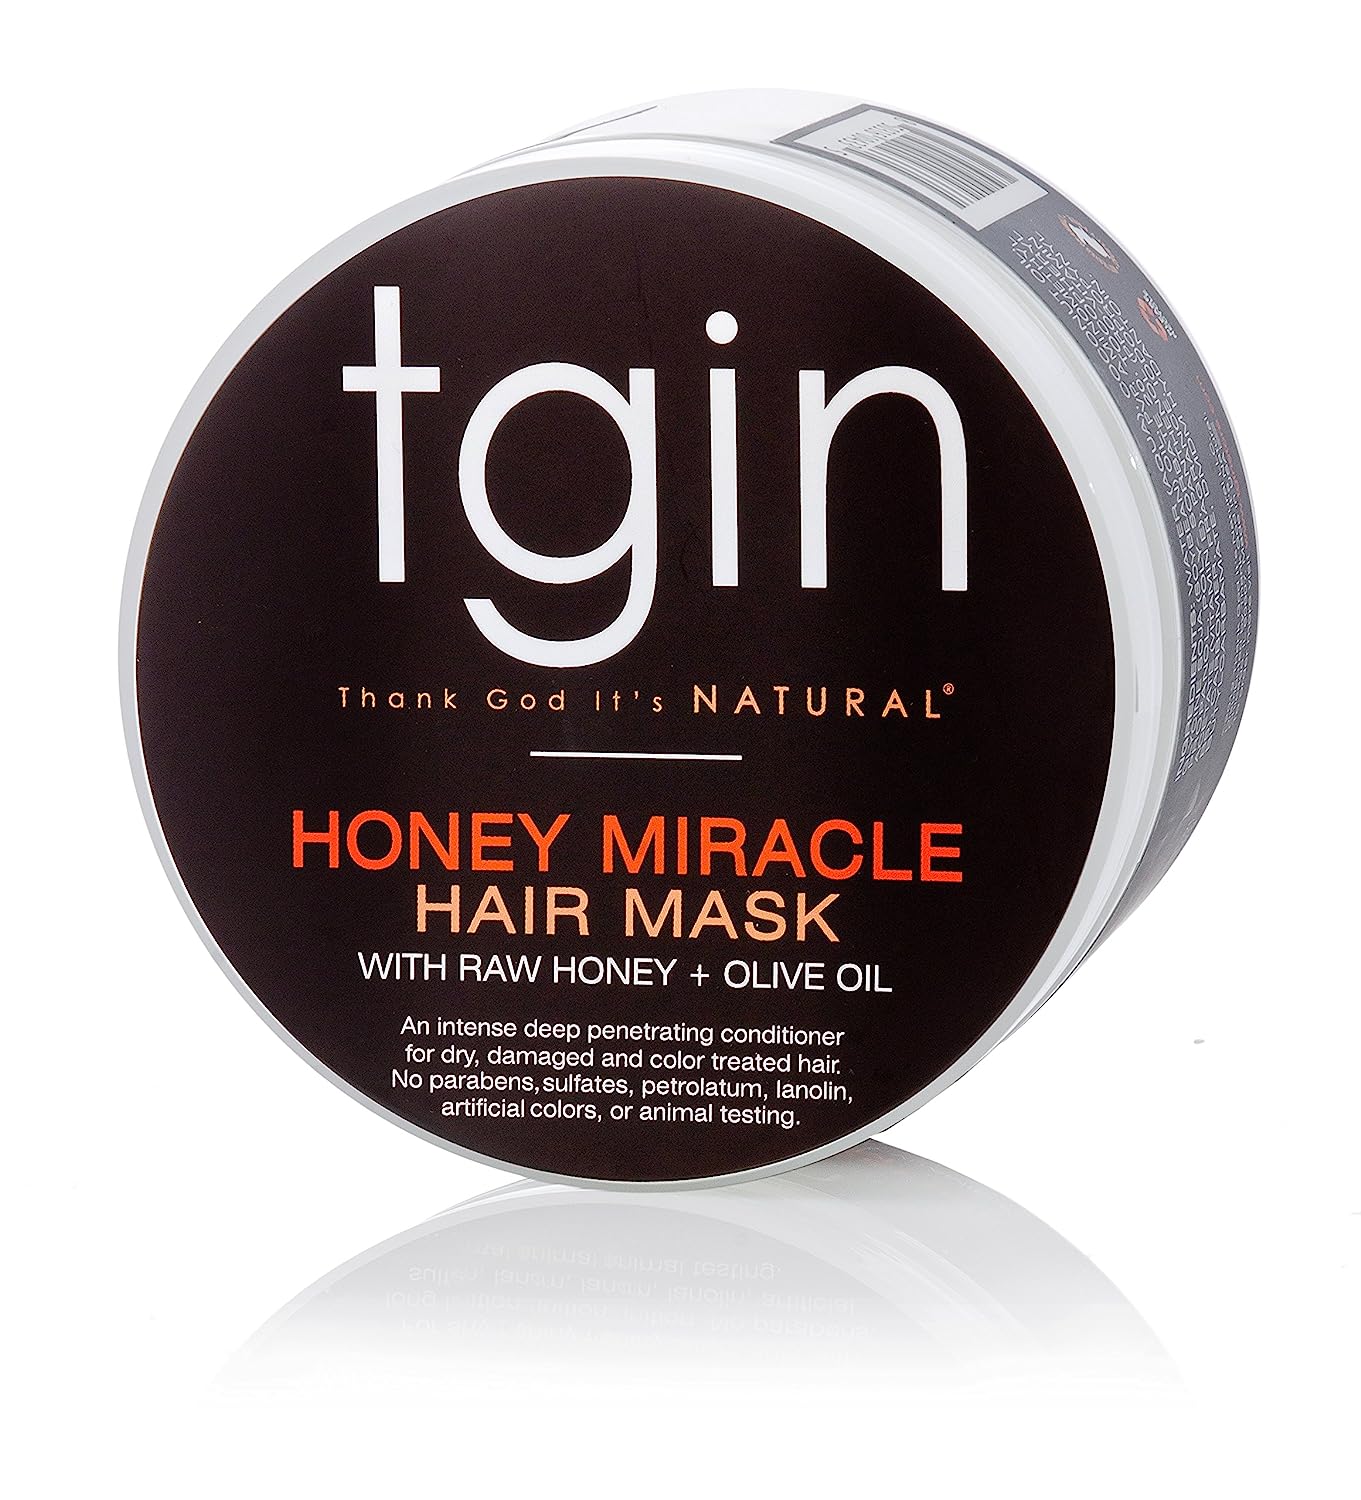 tgin Honey Miracle Hair Mask for Natural Hair - 12 oz [...]